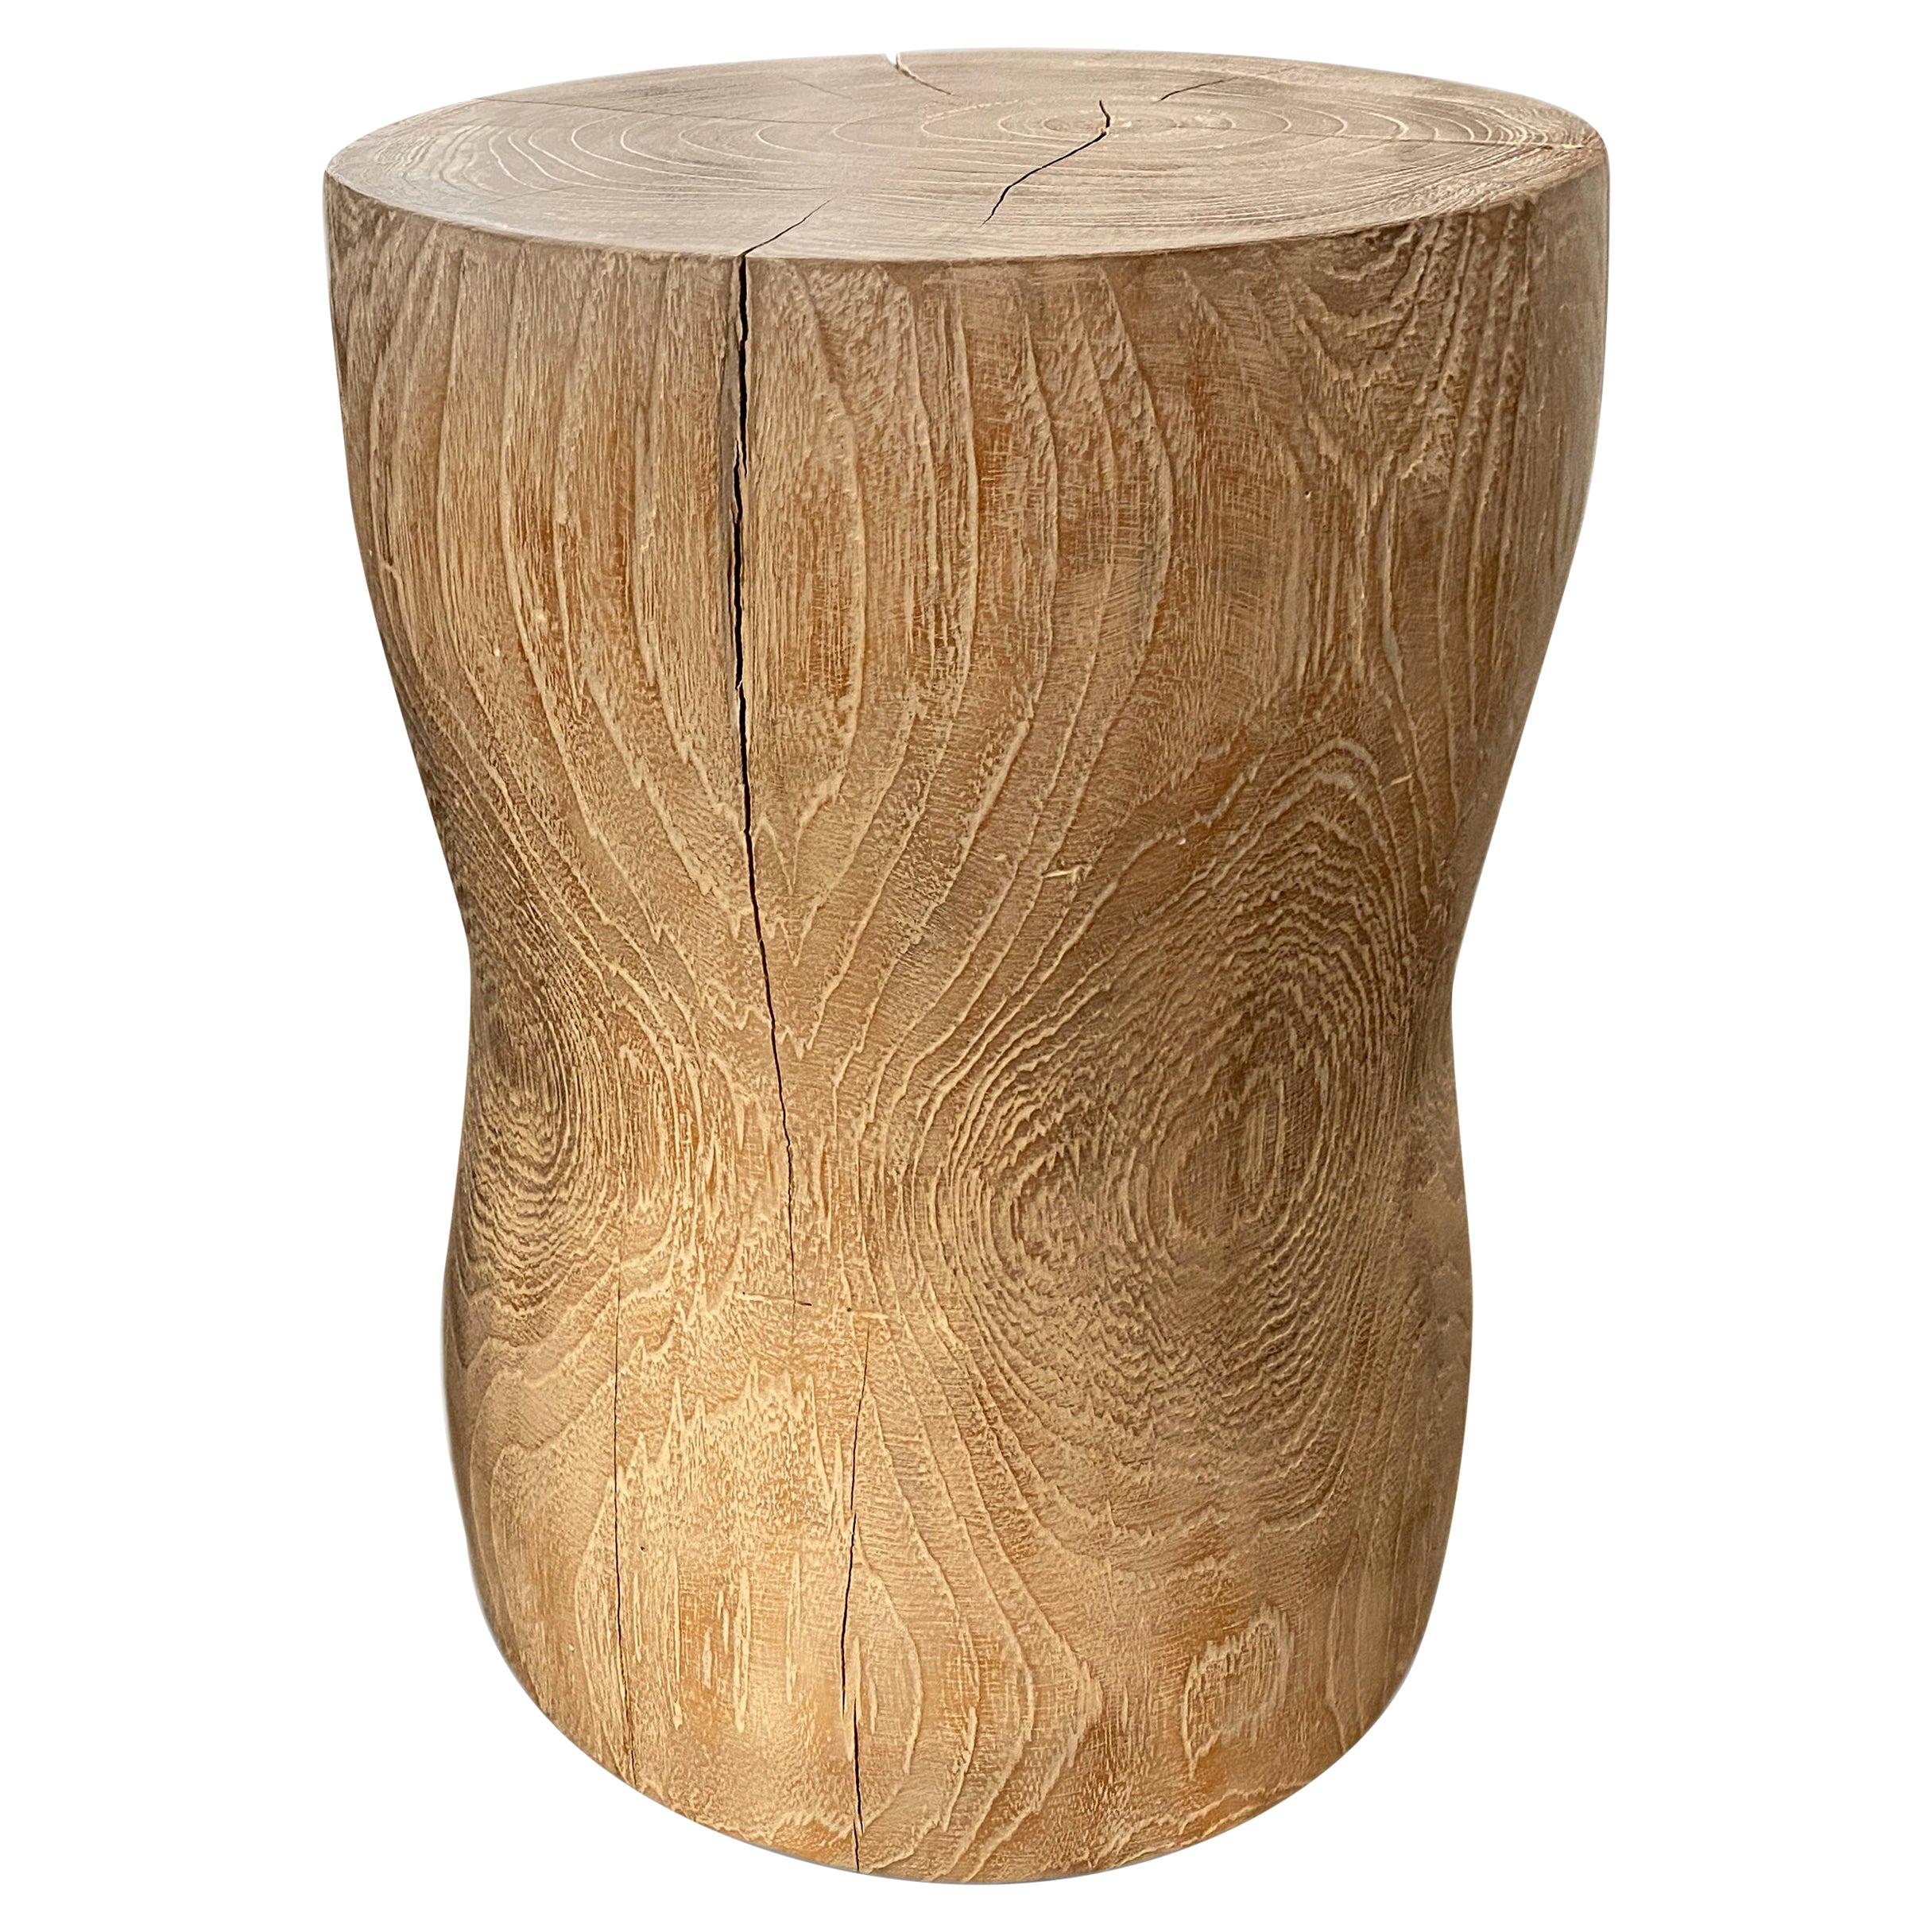 Andrianna Shamaris Hand Carved Teak Wood Side Table or Stool